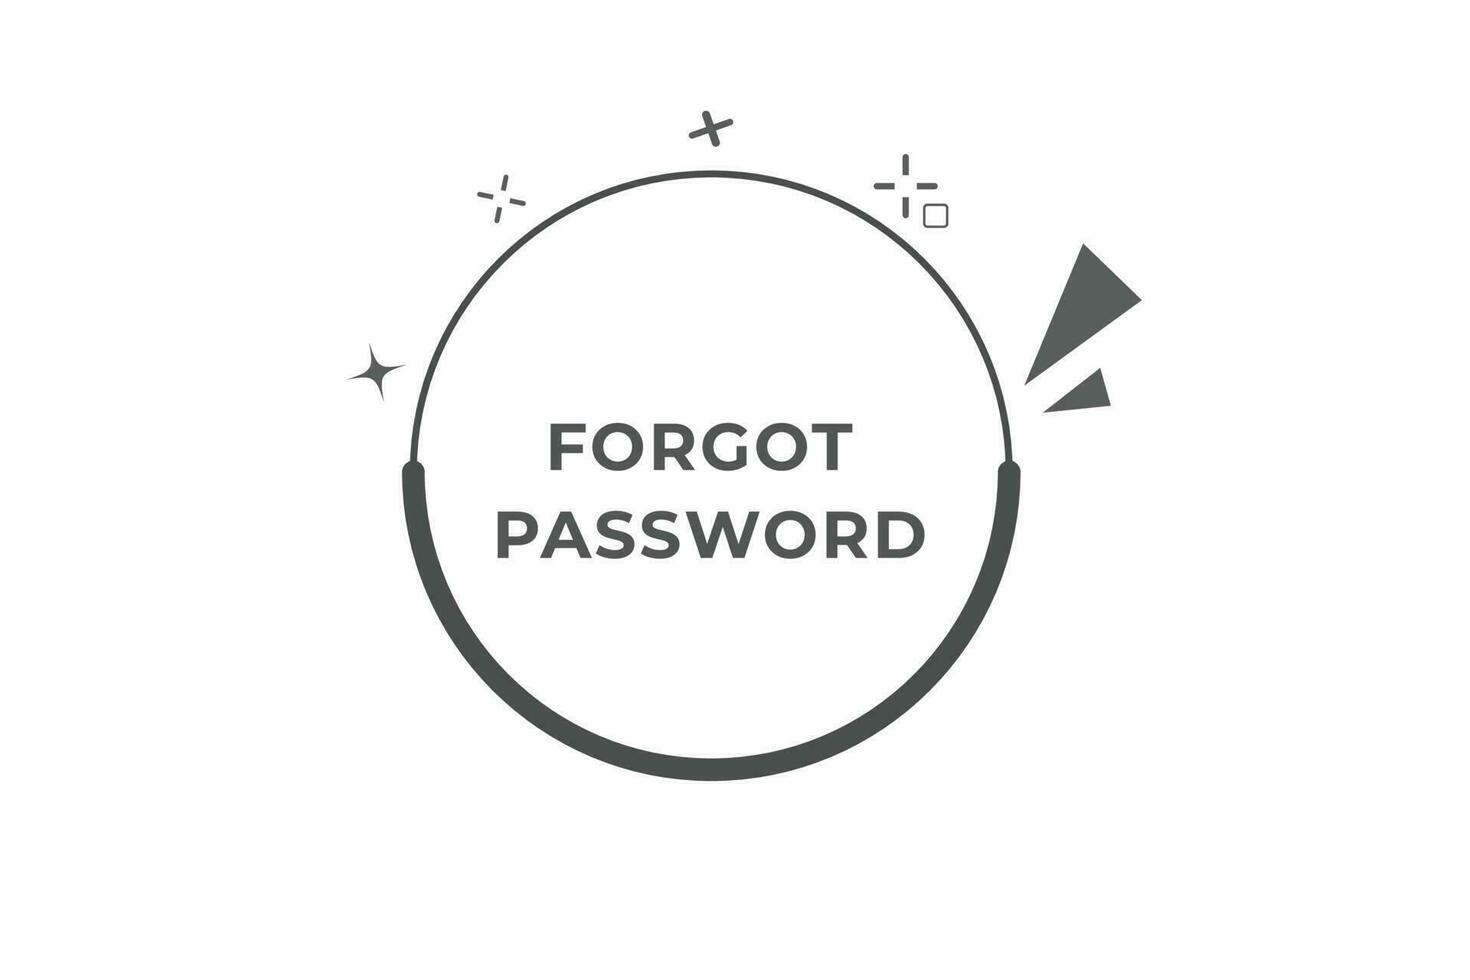 vergessen Passwort Taste. Rede Blase, Banner Etikette vergessen Passwort vektor